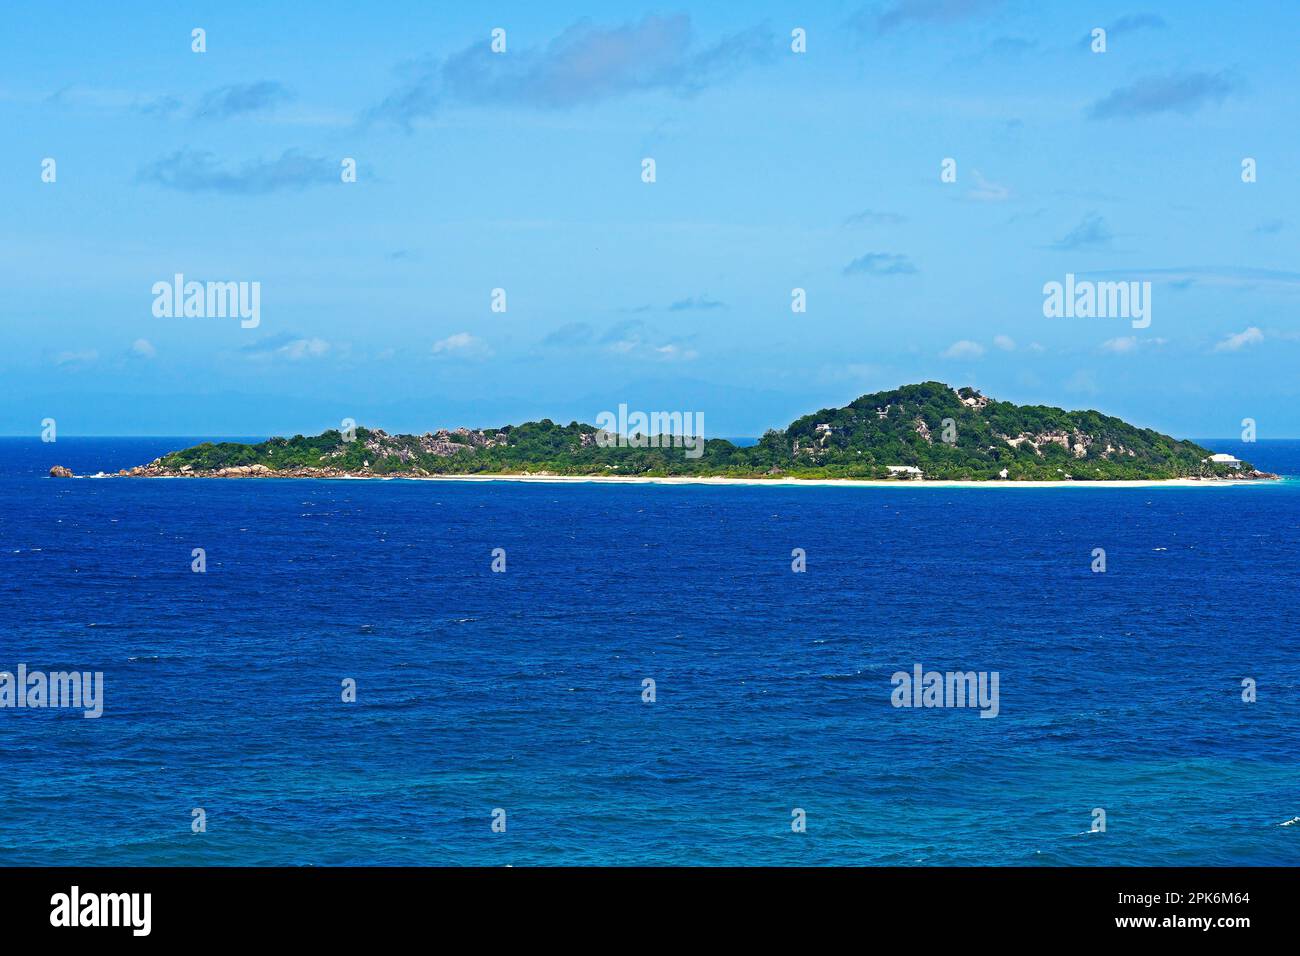 Île Cousin, île privée, vue de l'île Cousin, Seychelles Banque D'Images